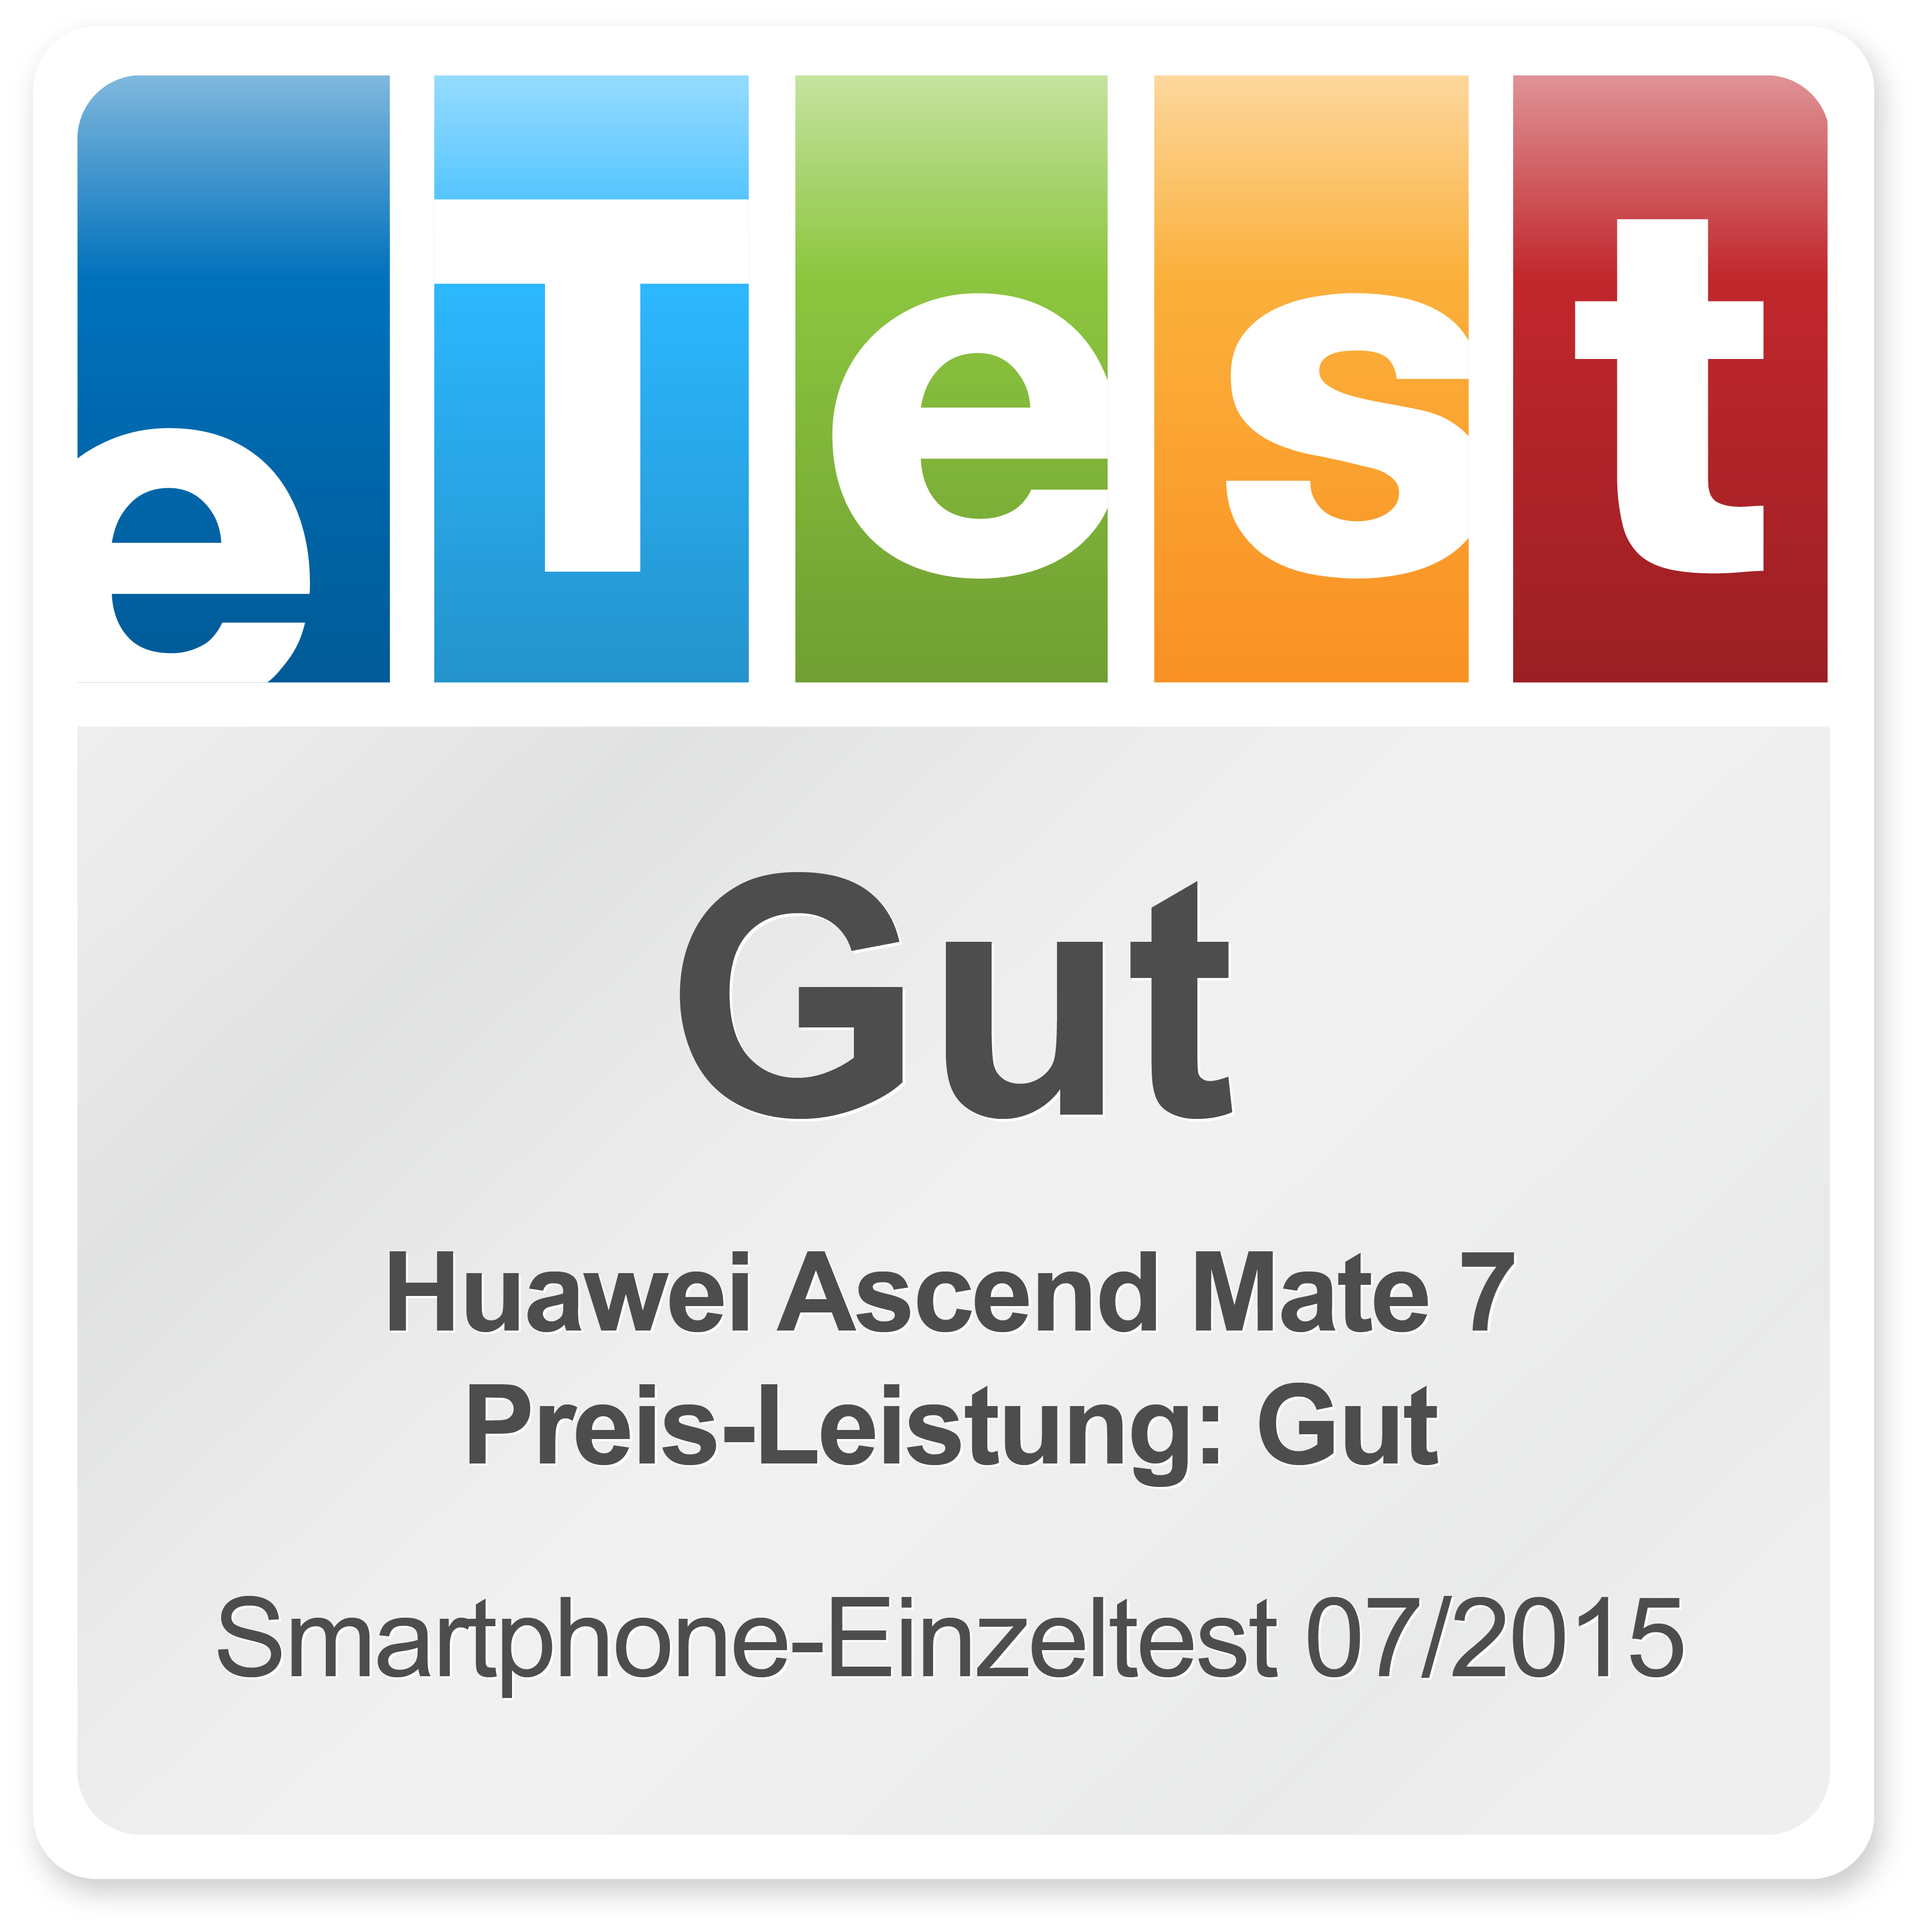  Huawei Ascend Mate 7